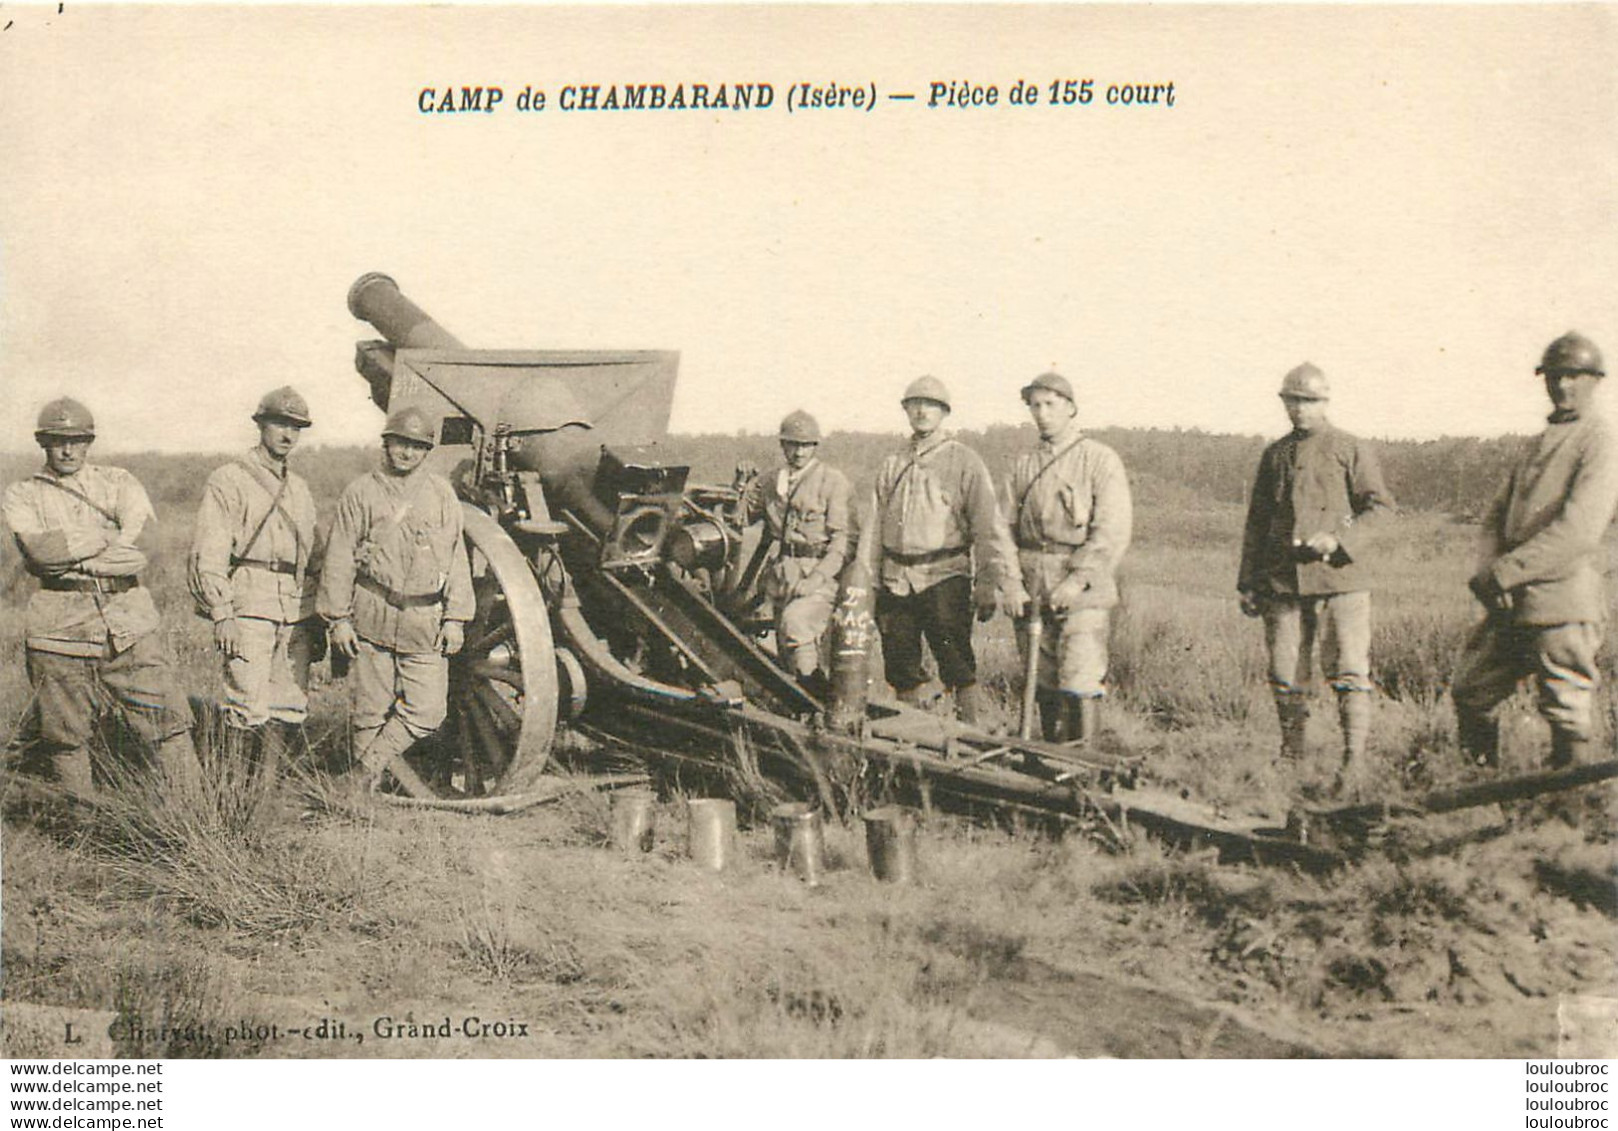 PIECE DE 155 COURT CAMP DE CHAMBARAND - Equipment